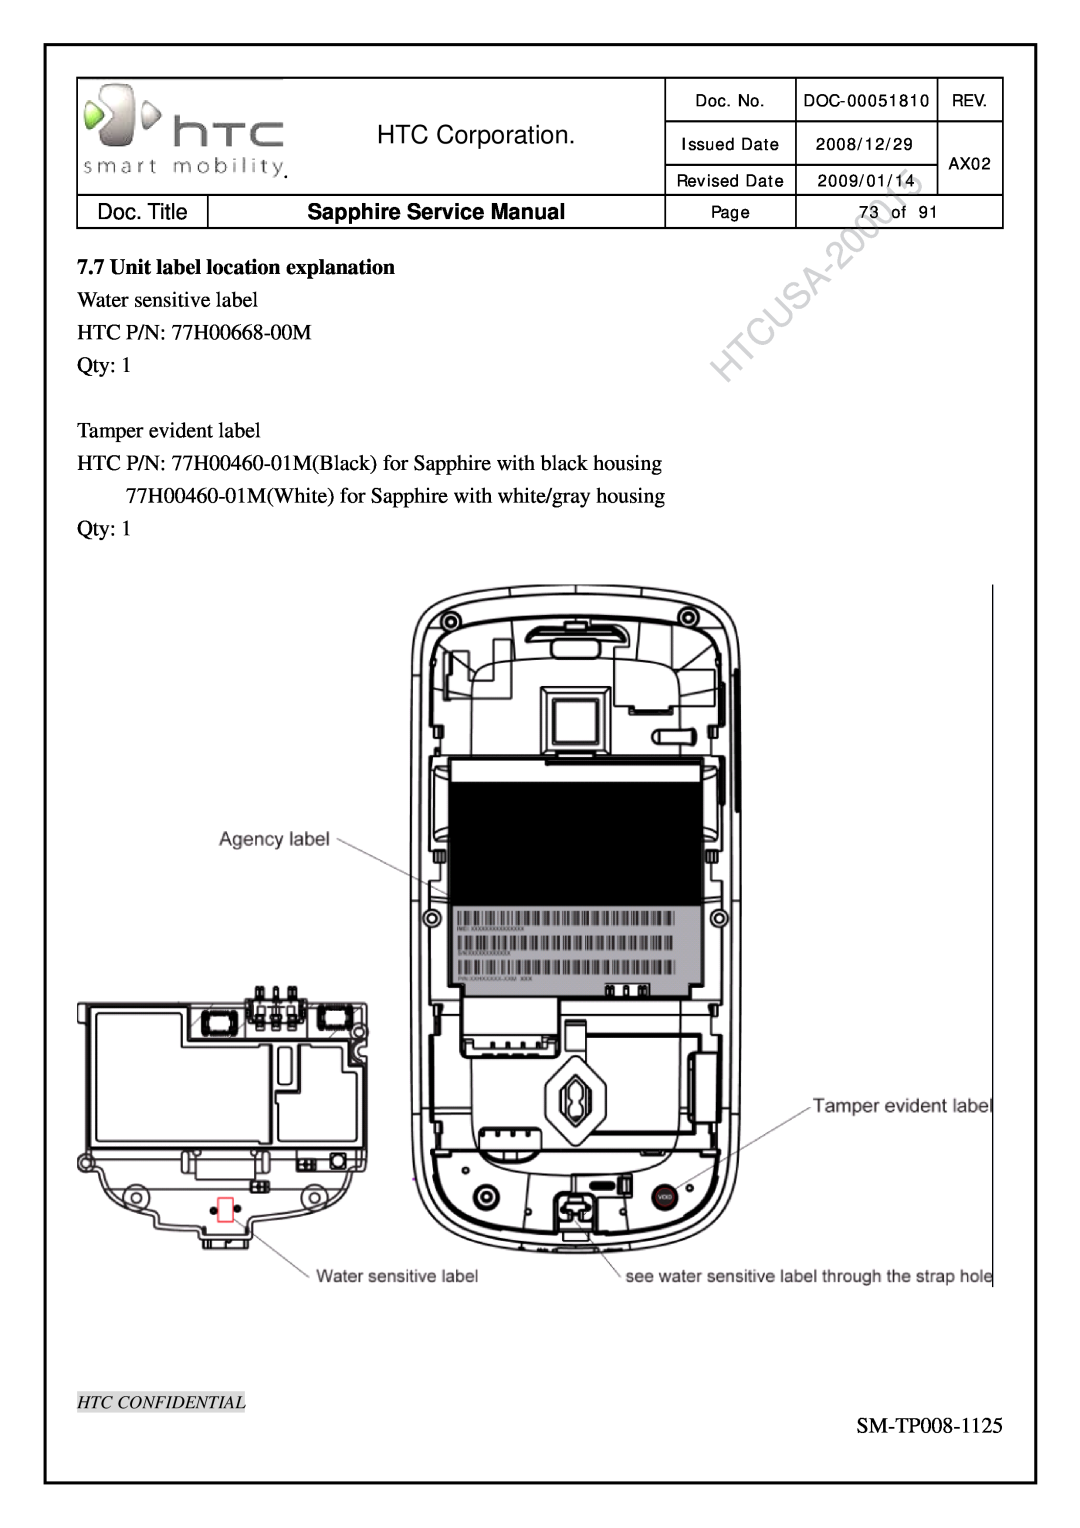 HTC SM-TP008-1125 Unit label location explanation Water sensitive label, HTC Corporation, Sapphire Service Manual, Doc. No 